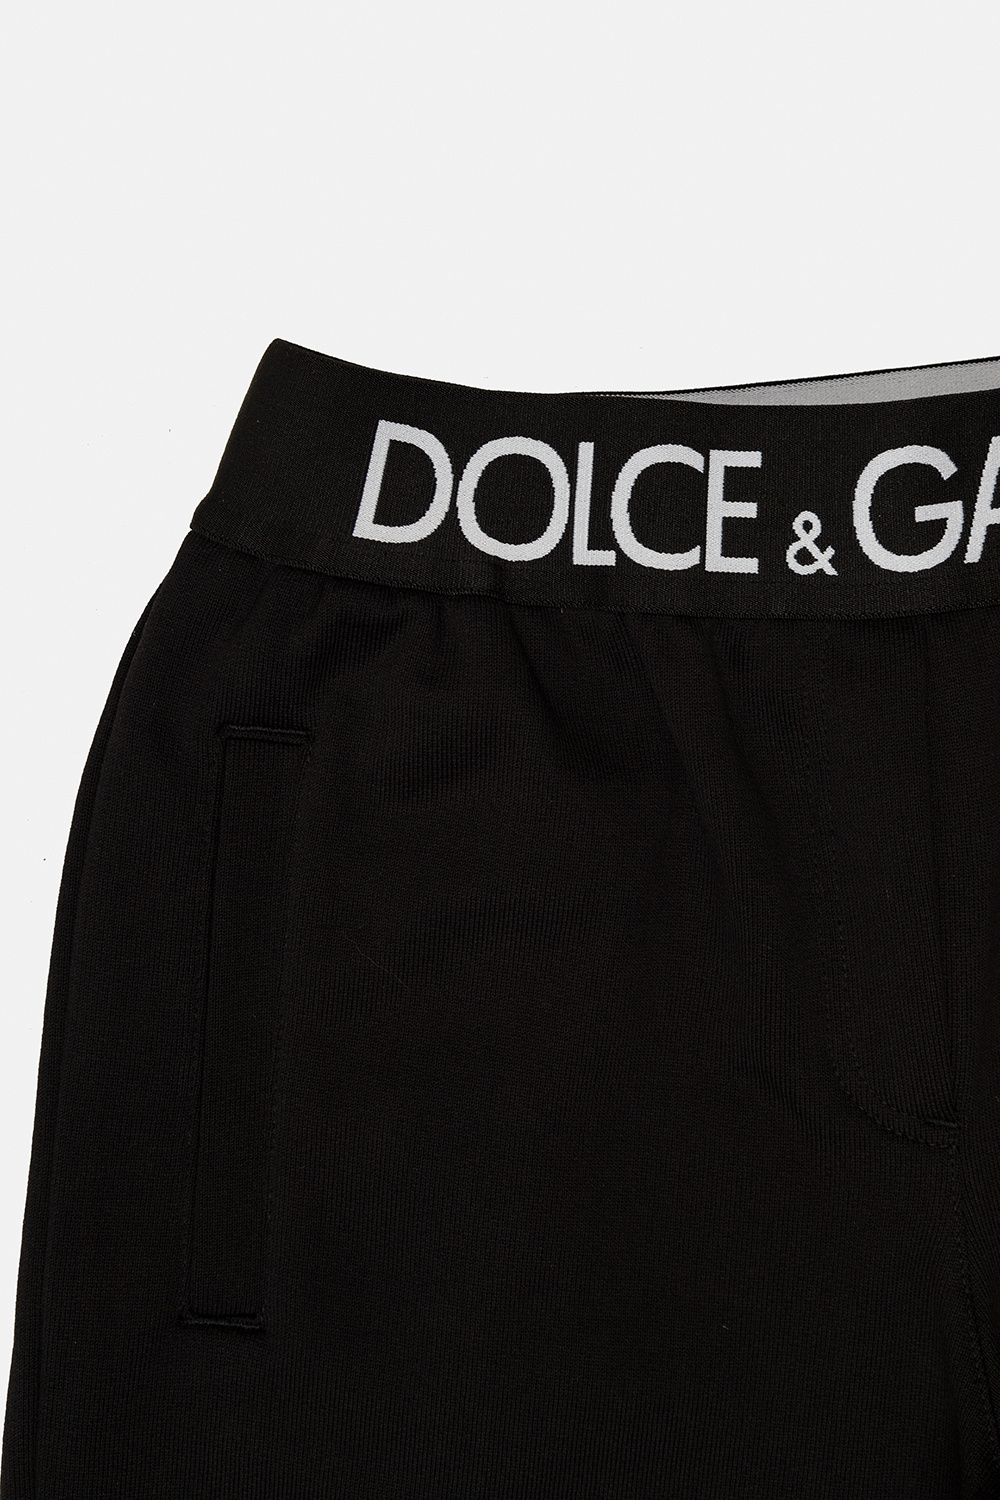 Dolce and Gabbana Majolica Print Mini Sicily Dolce & Gabbana high-waisted logo-waistband briefs